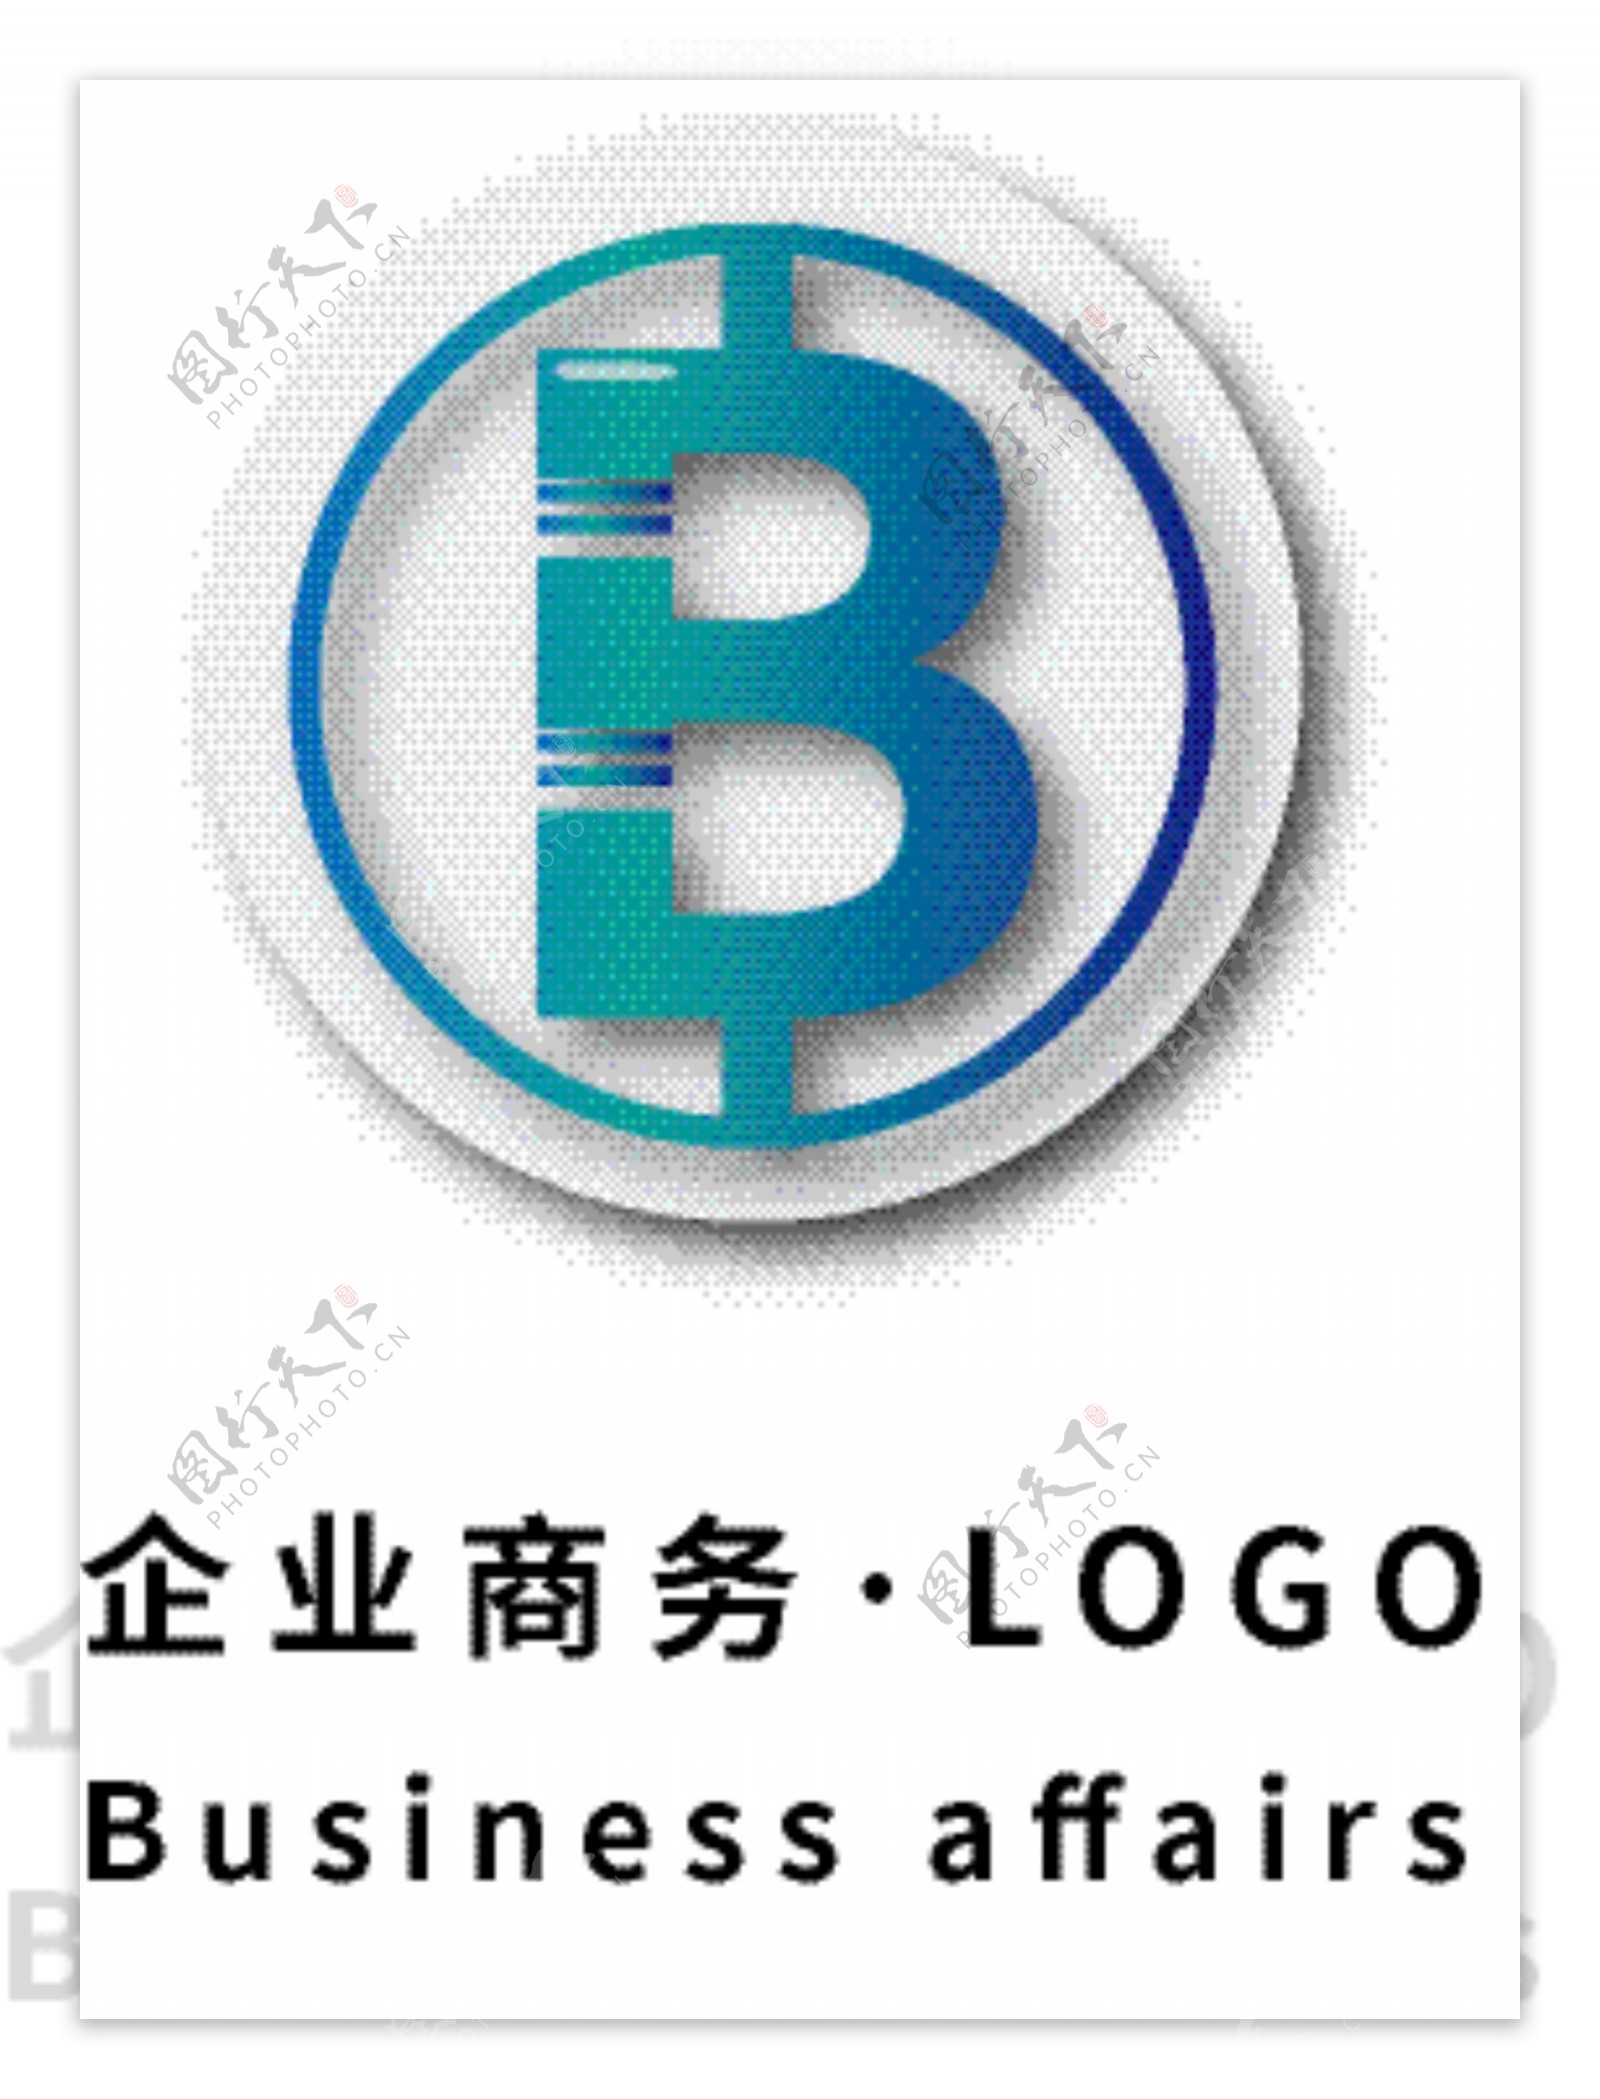 企业商务通用LOGO模版字母B变形蓝色